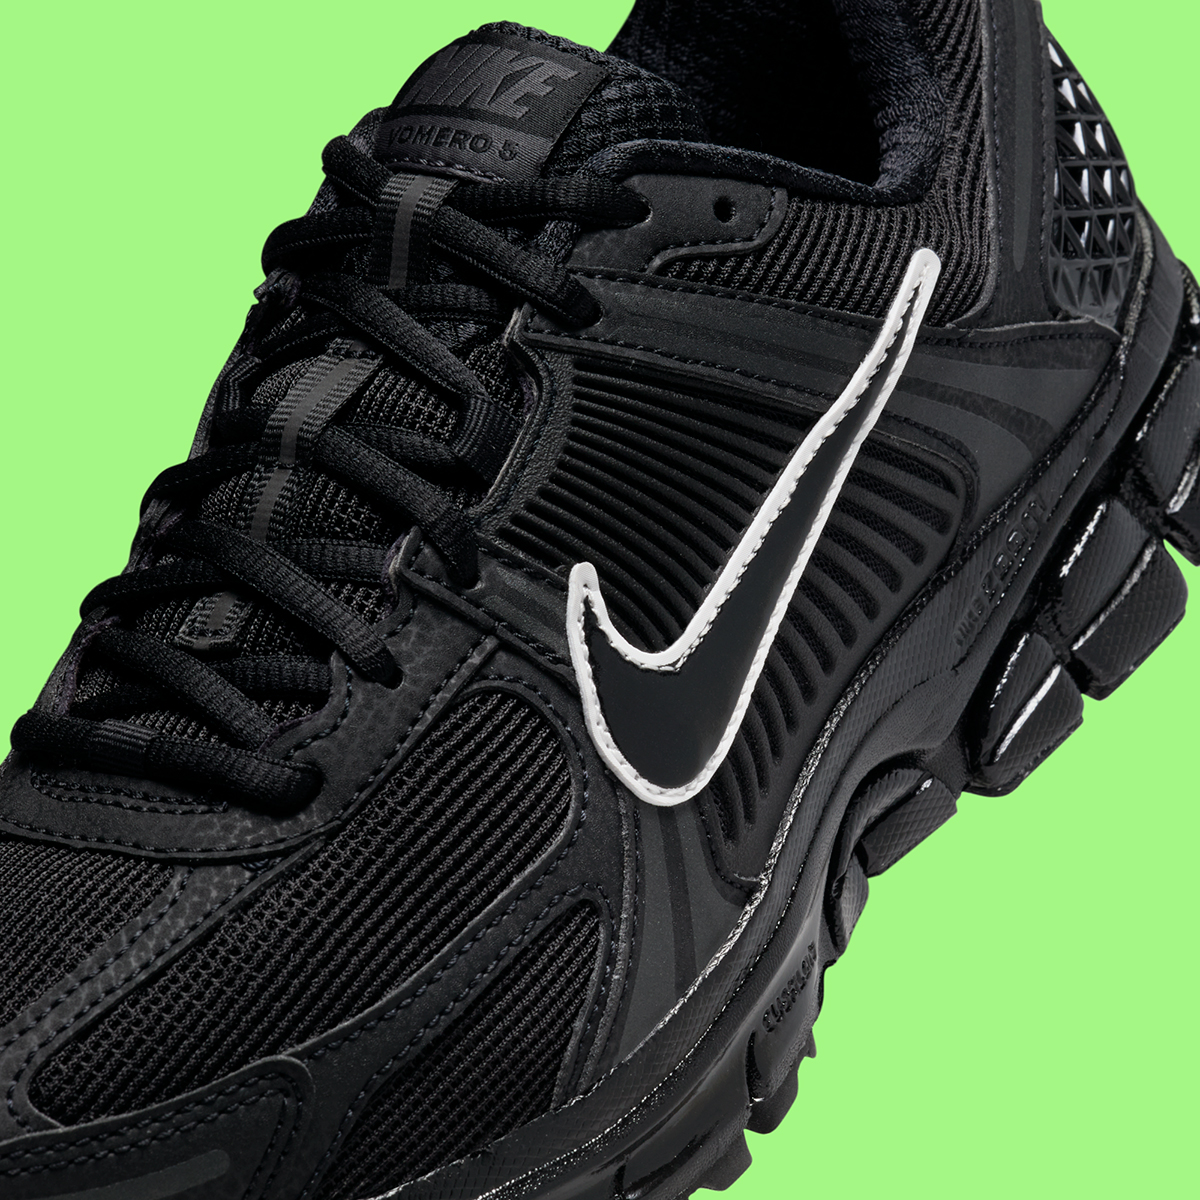 Nike Zoom Vomero 5 Black White Hm9986 001 4